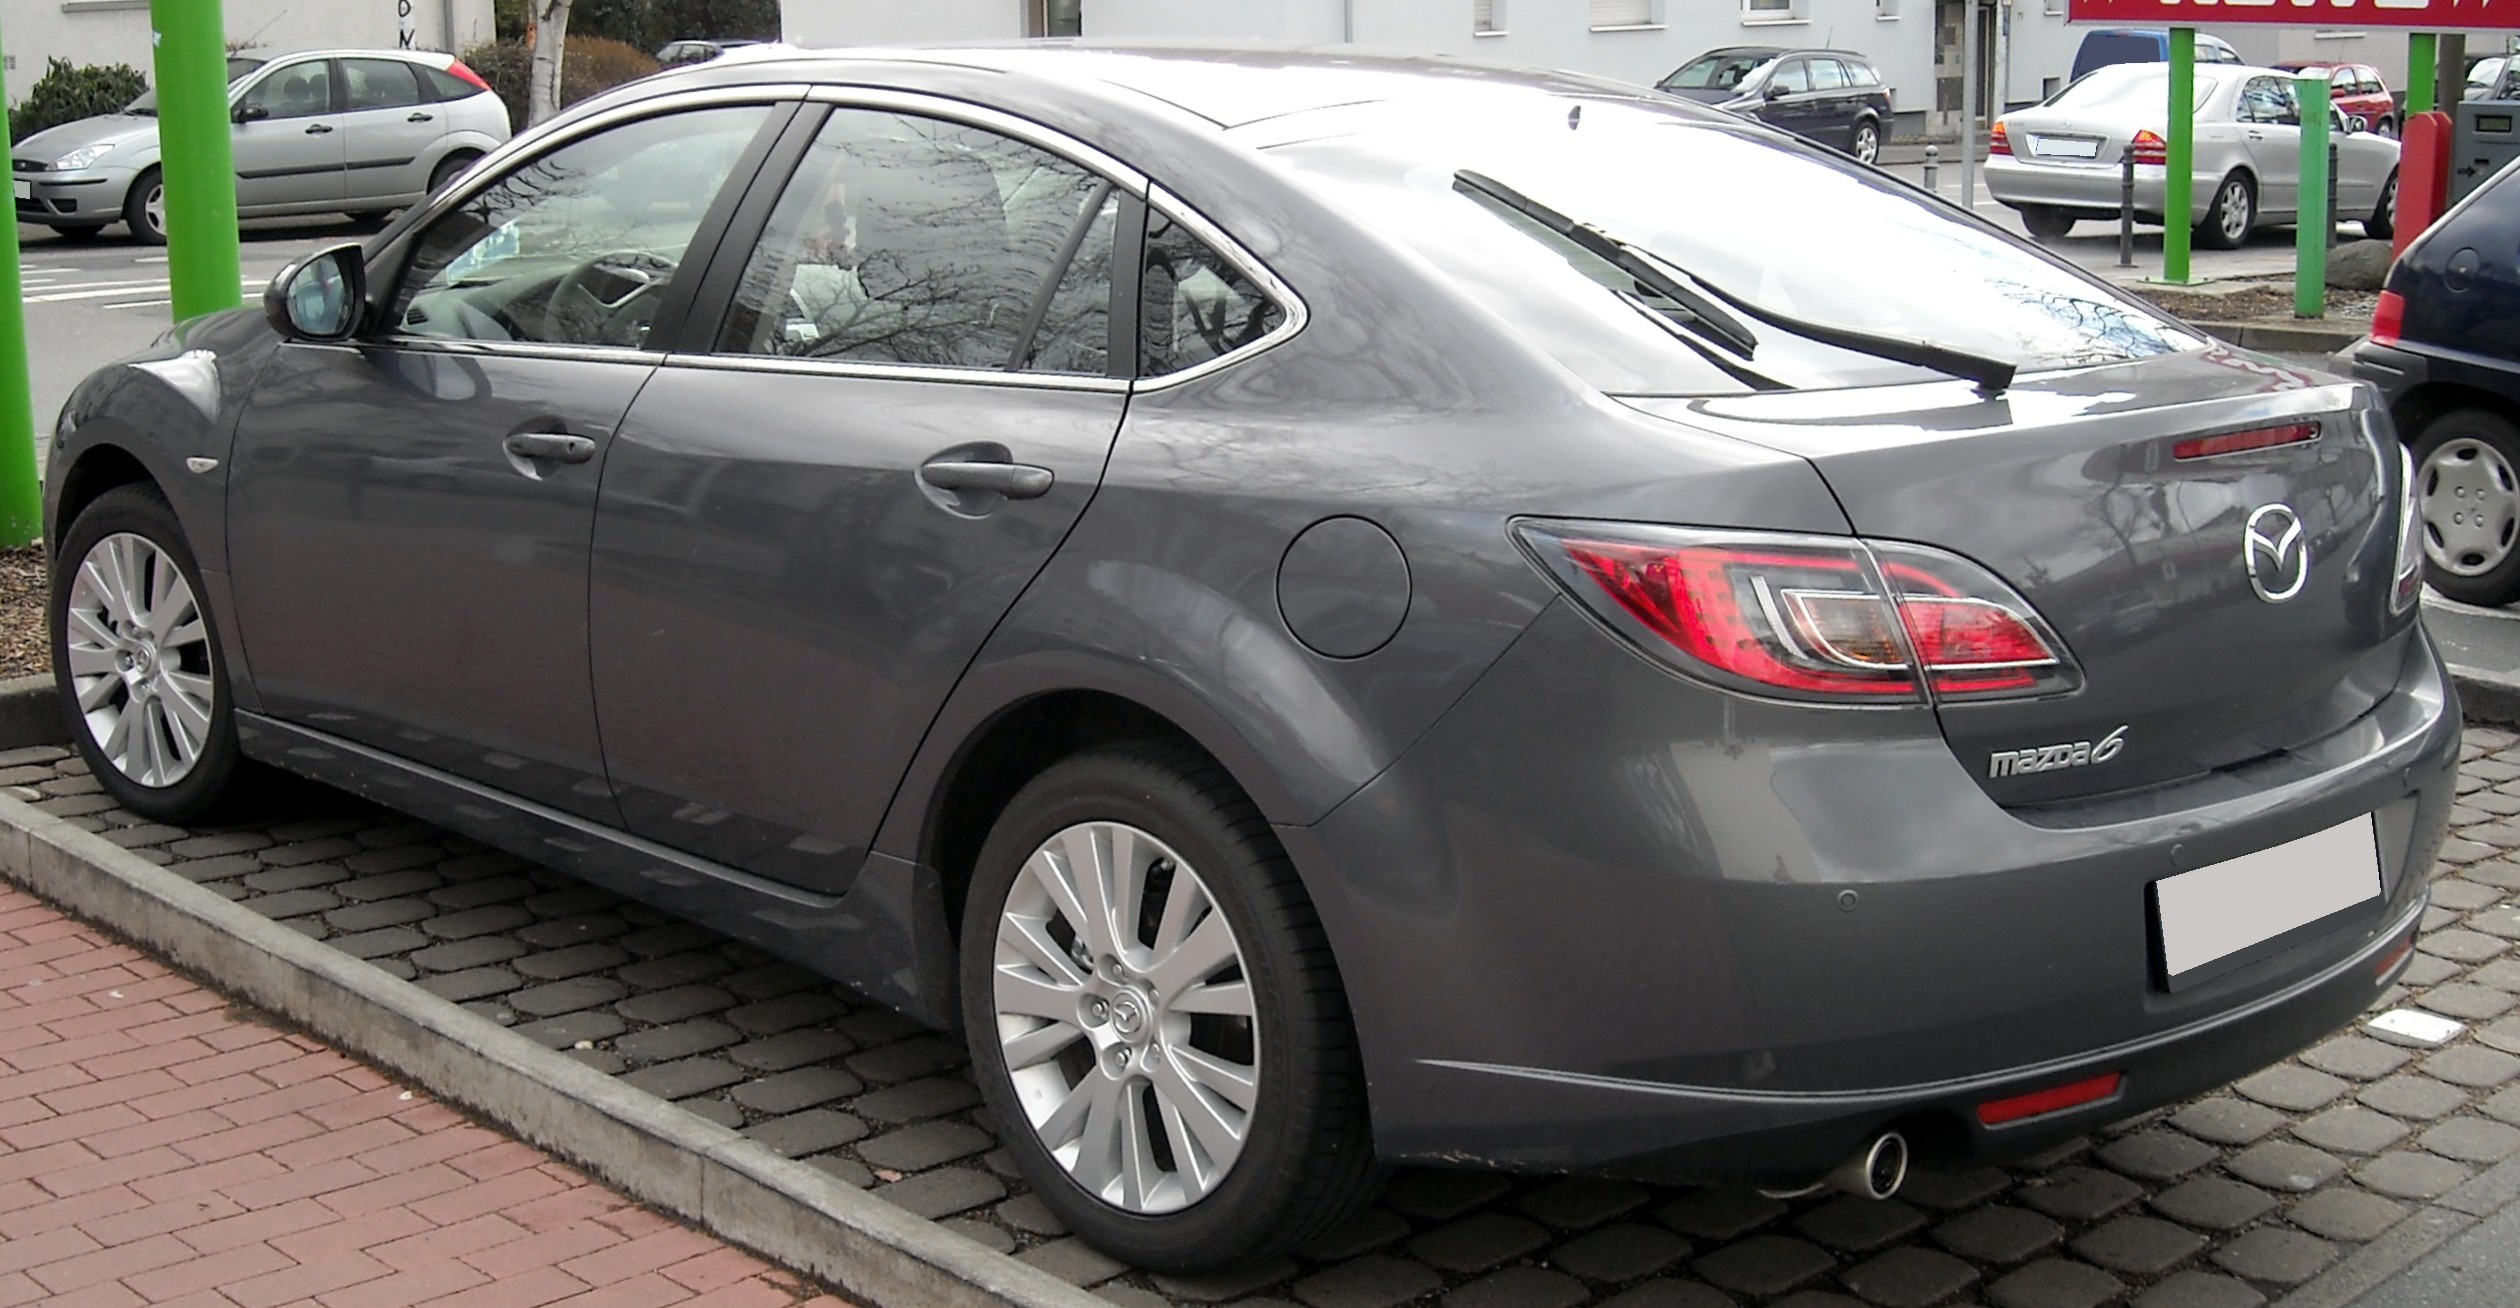 File:Mazda 6 rear 20090212.jpg - Wikipedia